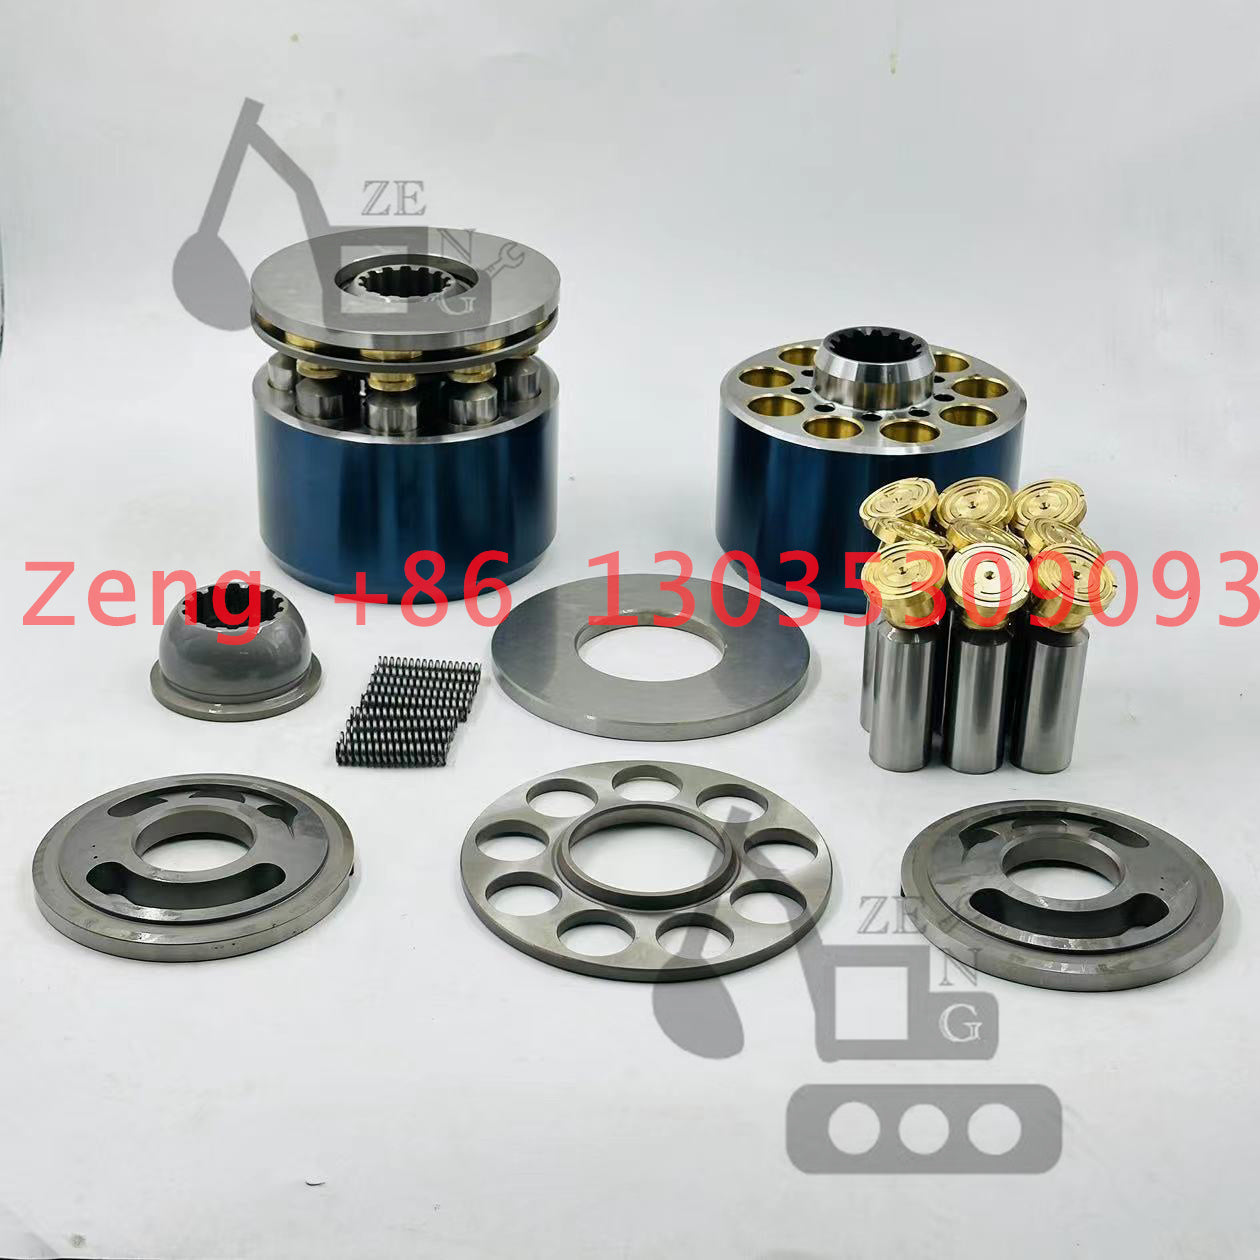 Kawasaki K3V112 hydraulic pump rotory group and spare parts for